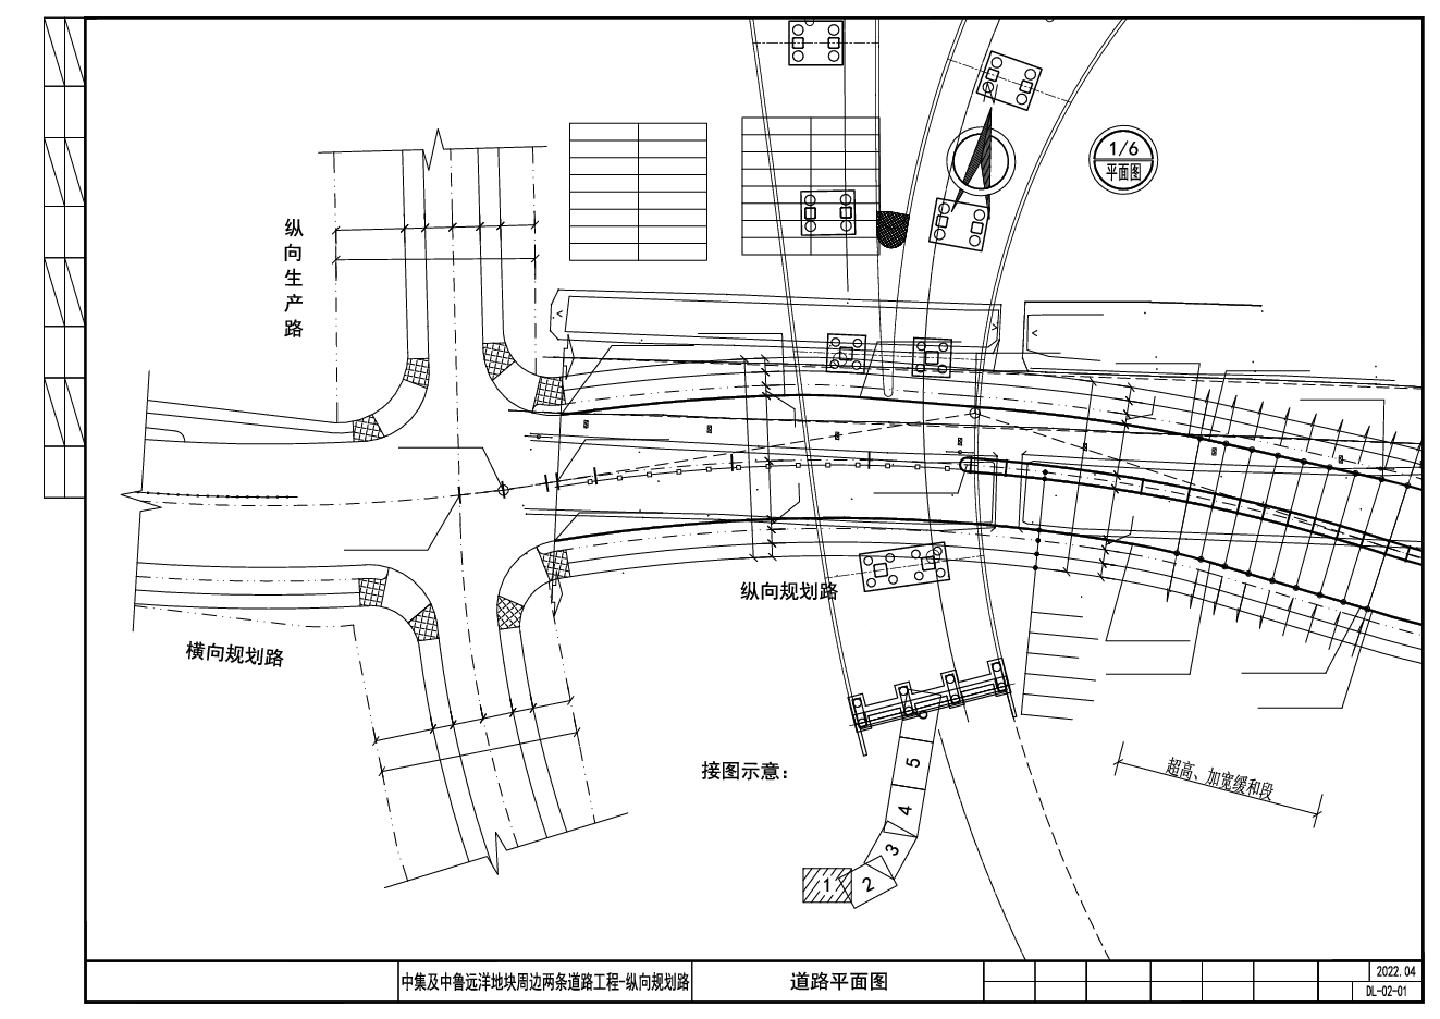 中集及中鲁远洋地块周边两条道路工程-纵向规划路，2道路平面图 CAD图